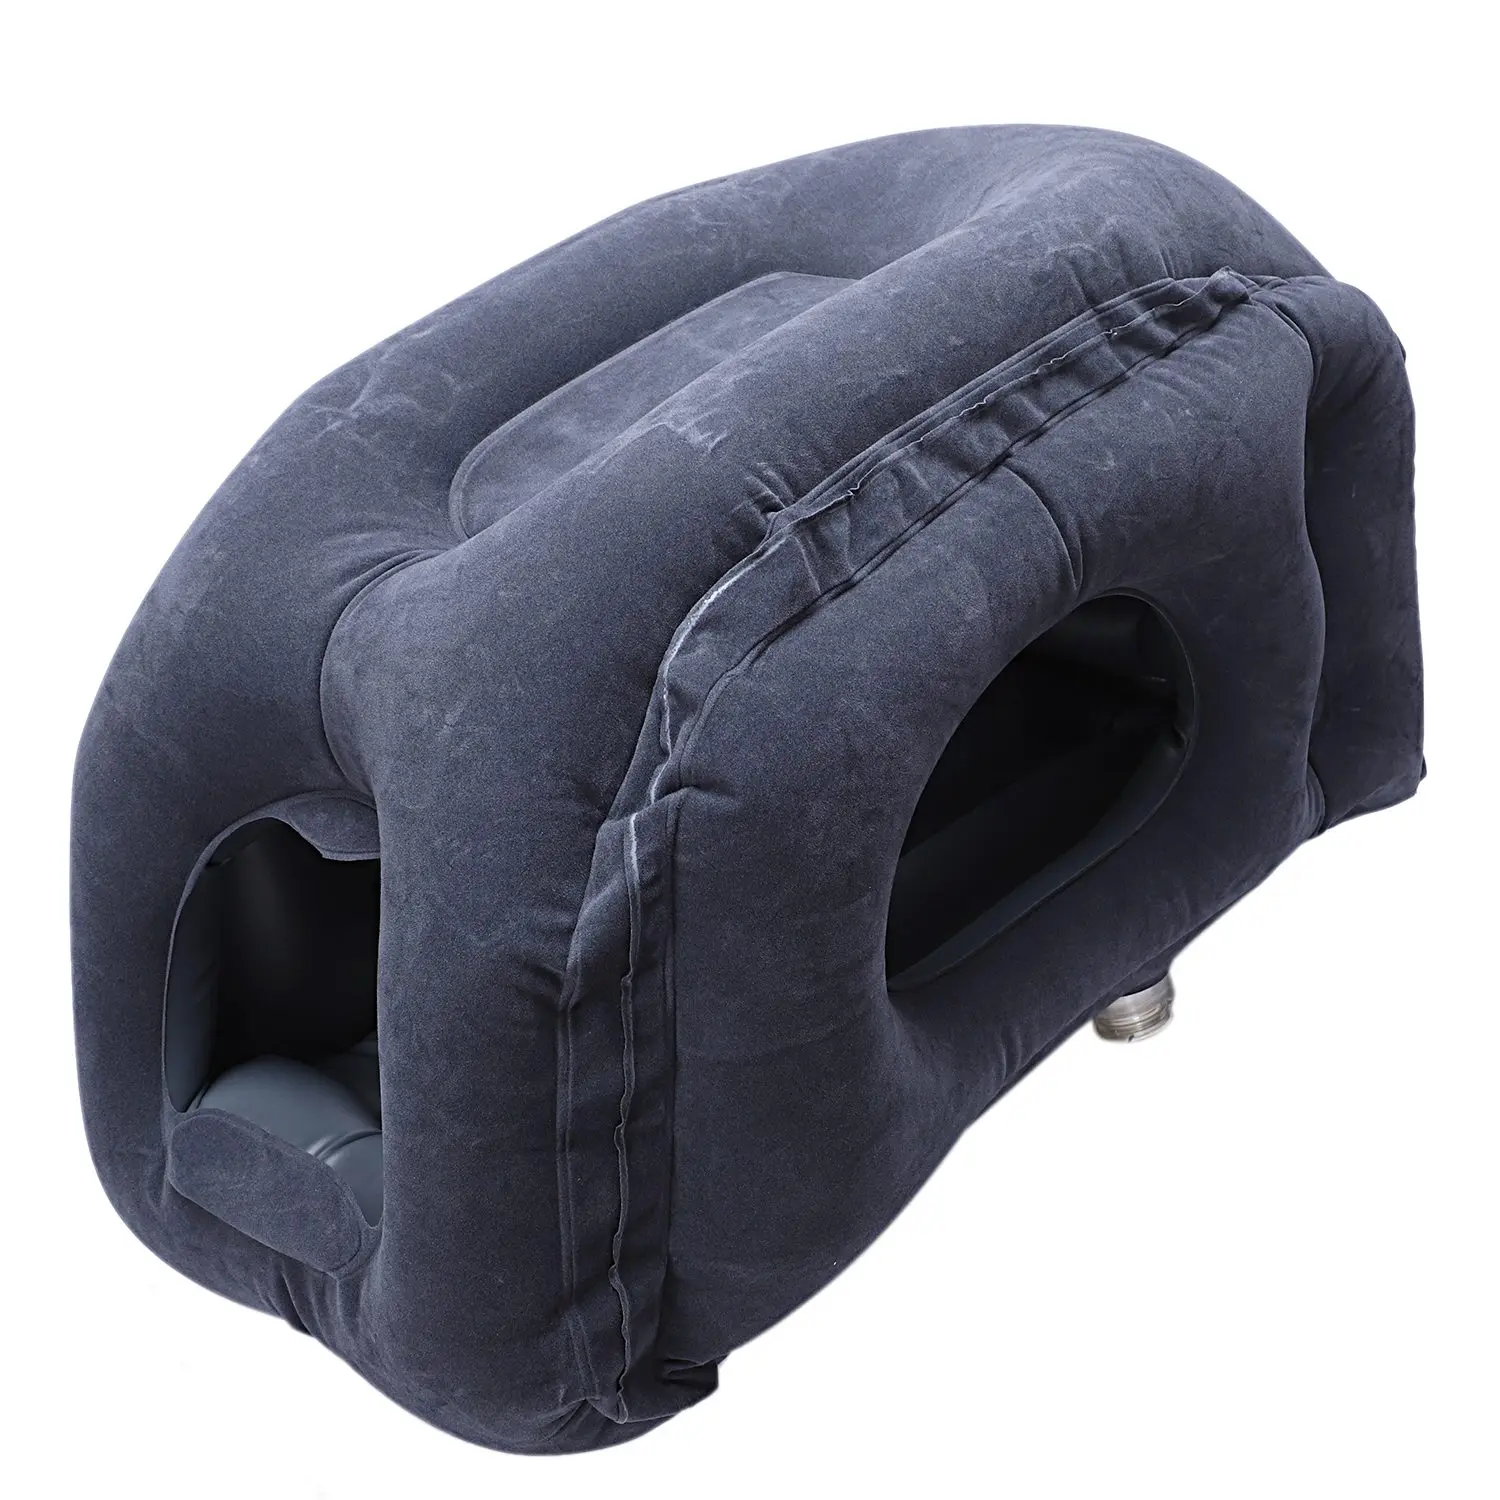 Дорожная подушка, надувные подушки, надувная мягкая подушка для путешествий, портативная инновационная продукция, поддержка спины тела, складная подушка для шеи